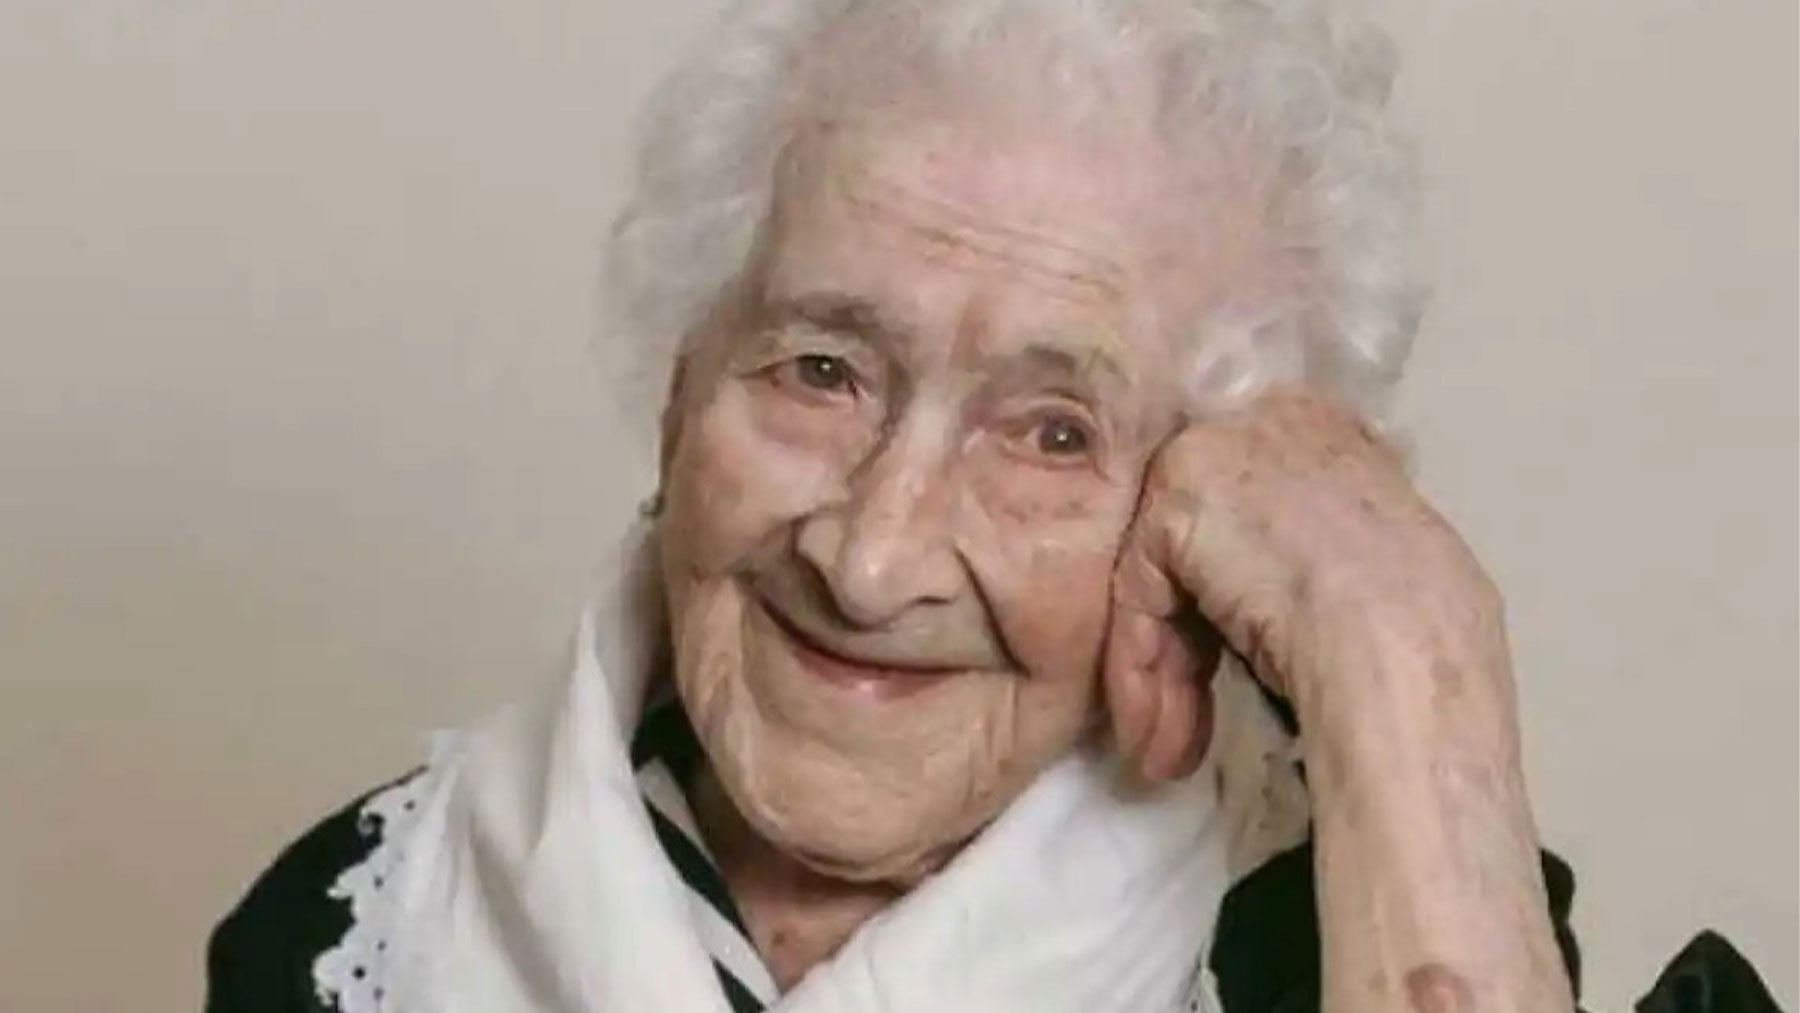 Jeanne practicó esgrima hasta los 85 años y pudo montar en bicicleta hasta los 100 años.